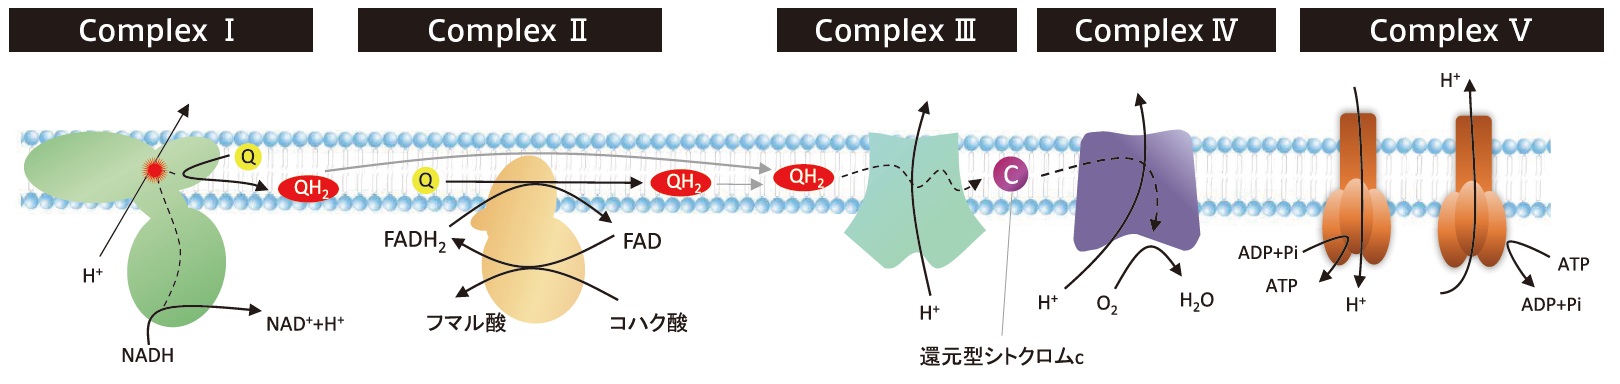 ミトコンドリアの電子伝達系酵素複合体(呼吸鎖複合体)の模式図